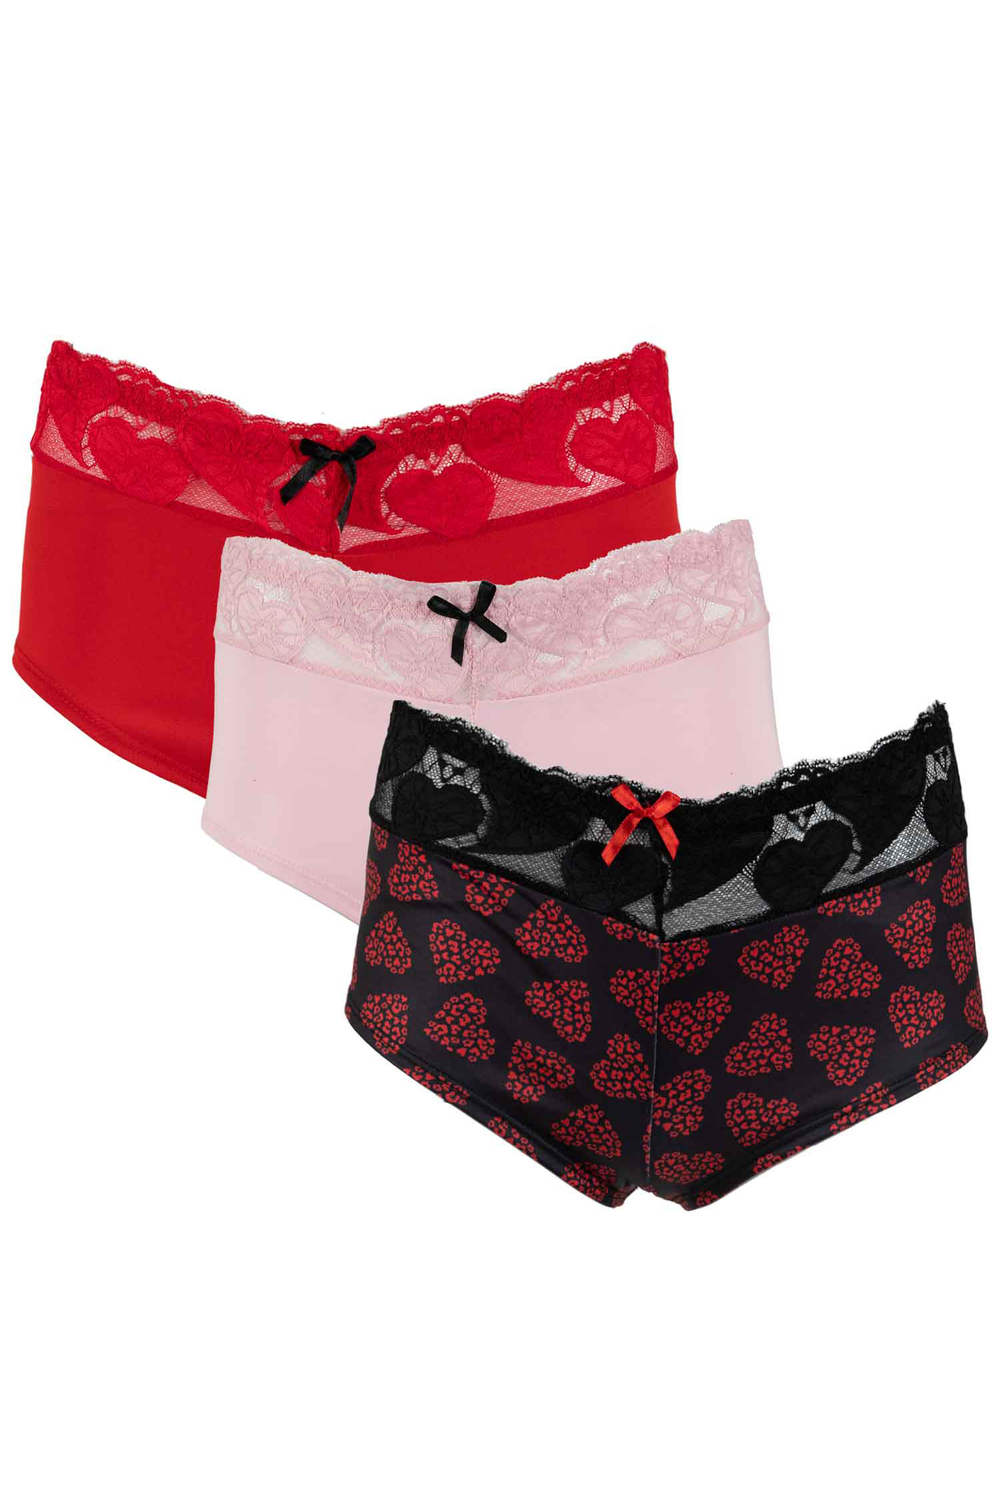 Set of 3 cotton boyshort underwear with elasticized lace waistband -  Sweethearts - Plus Size. Size: 1x